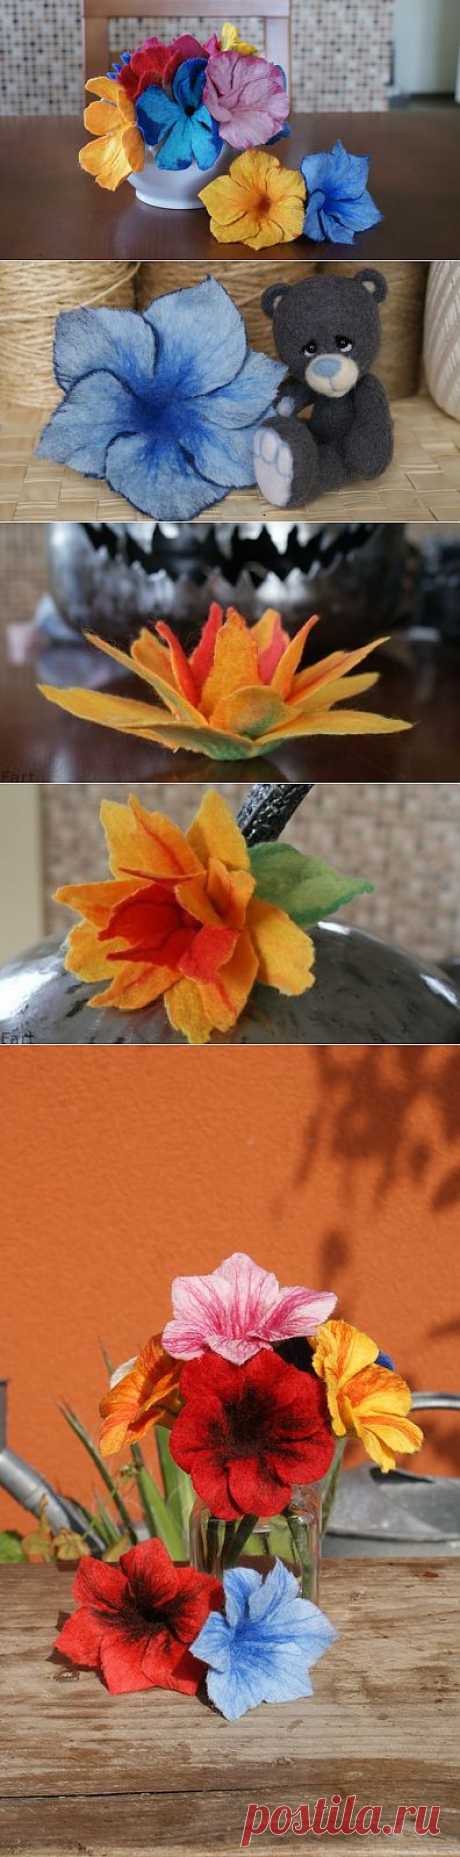 Цветы в технике мокрого валяния из шерсти. Фото мастер-класс.